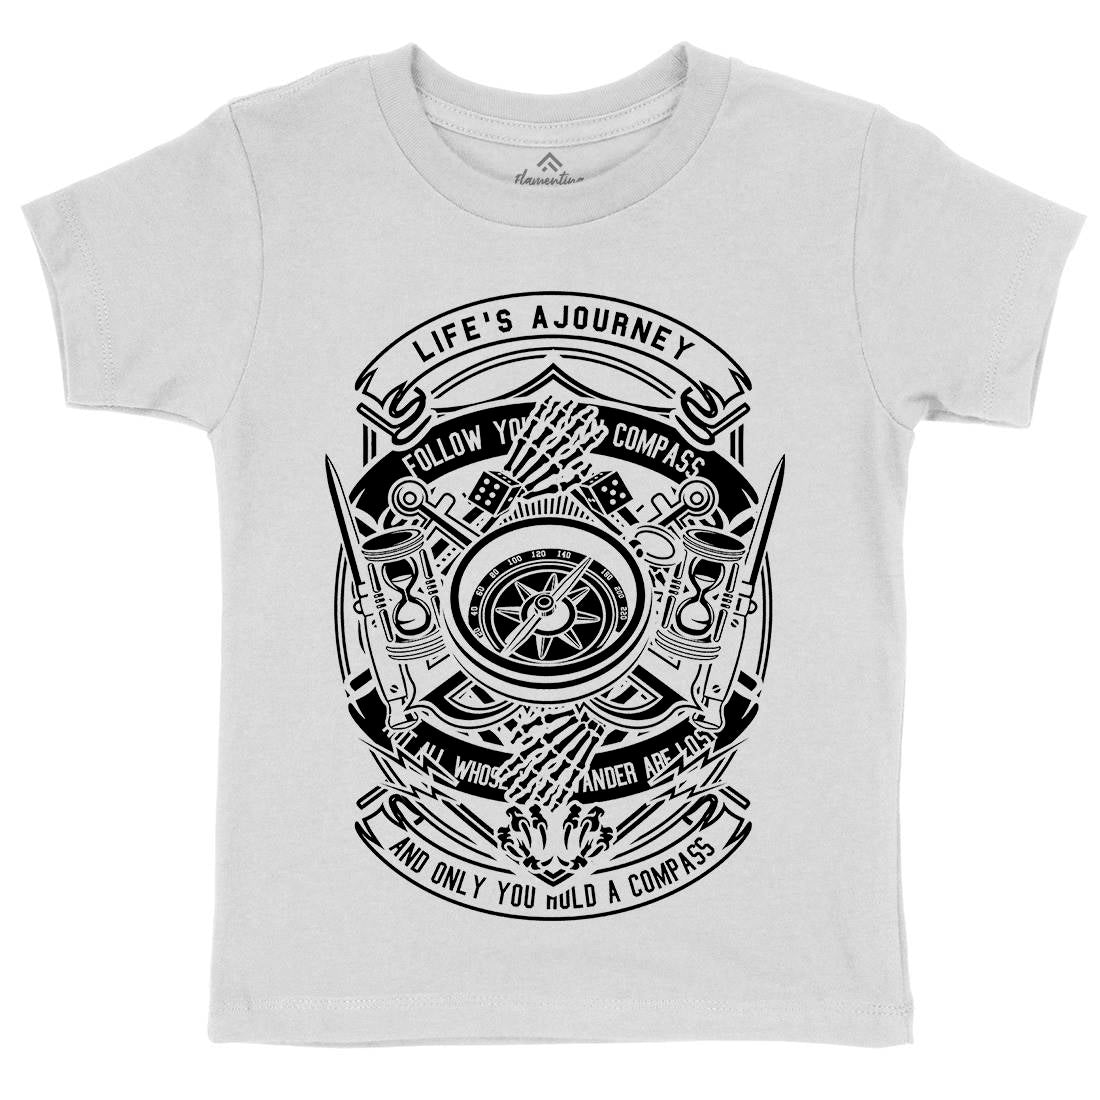 Compass Kids Crew Neck T-Shirt Navy B518